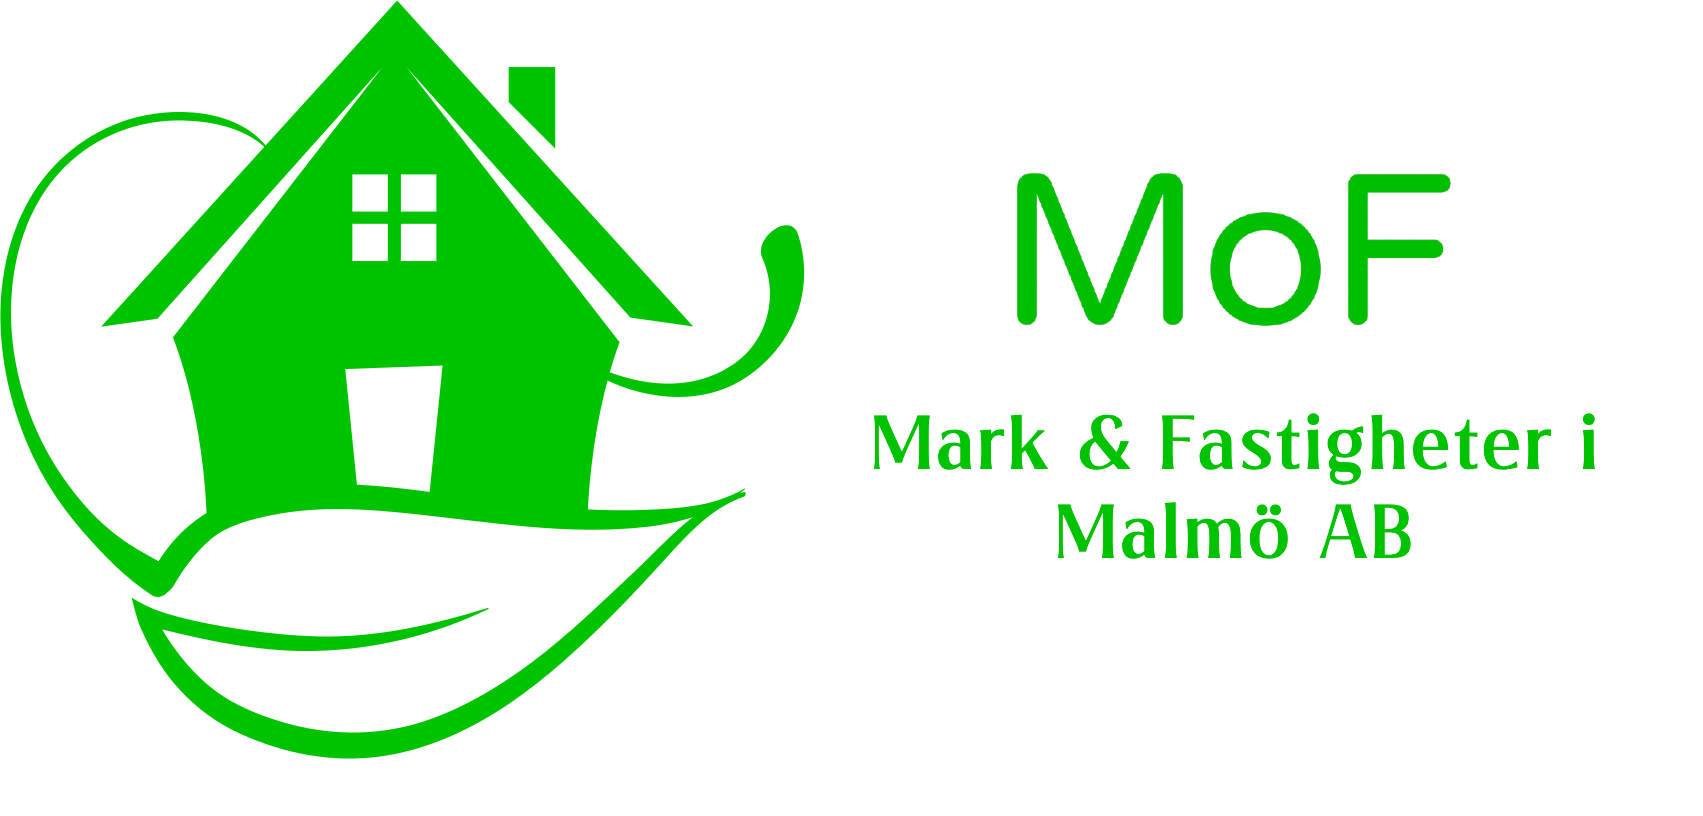 Mark & Fastigheter i Malmö AB